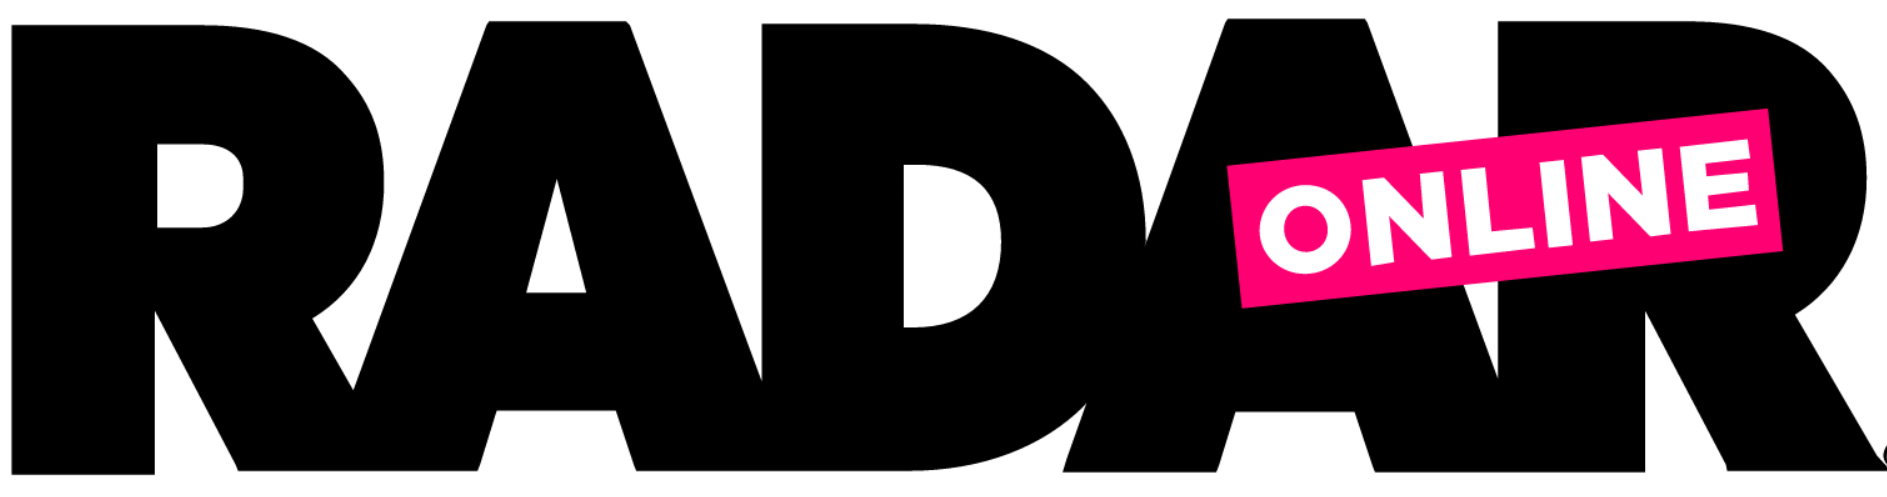 radaronline-logo.png